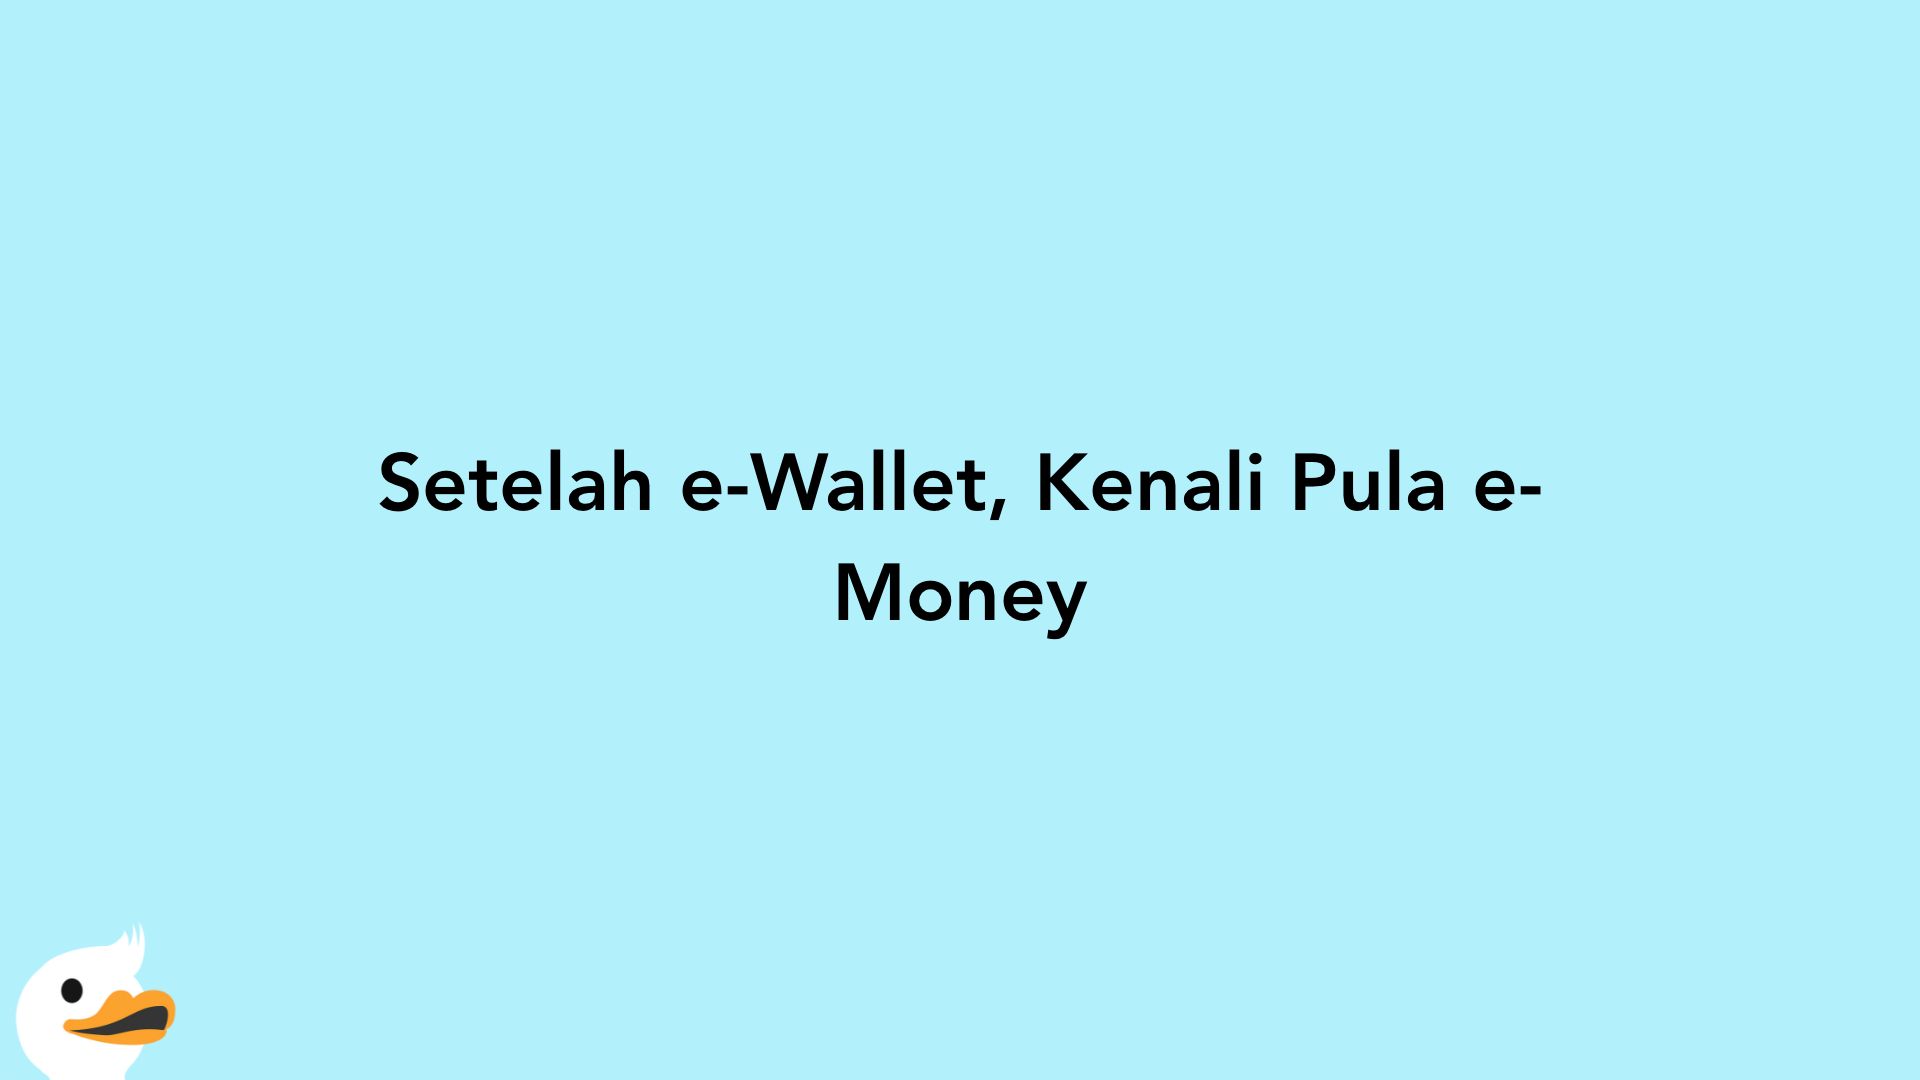 Setelah e-Wallet, Kenali Pula e-Money